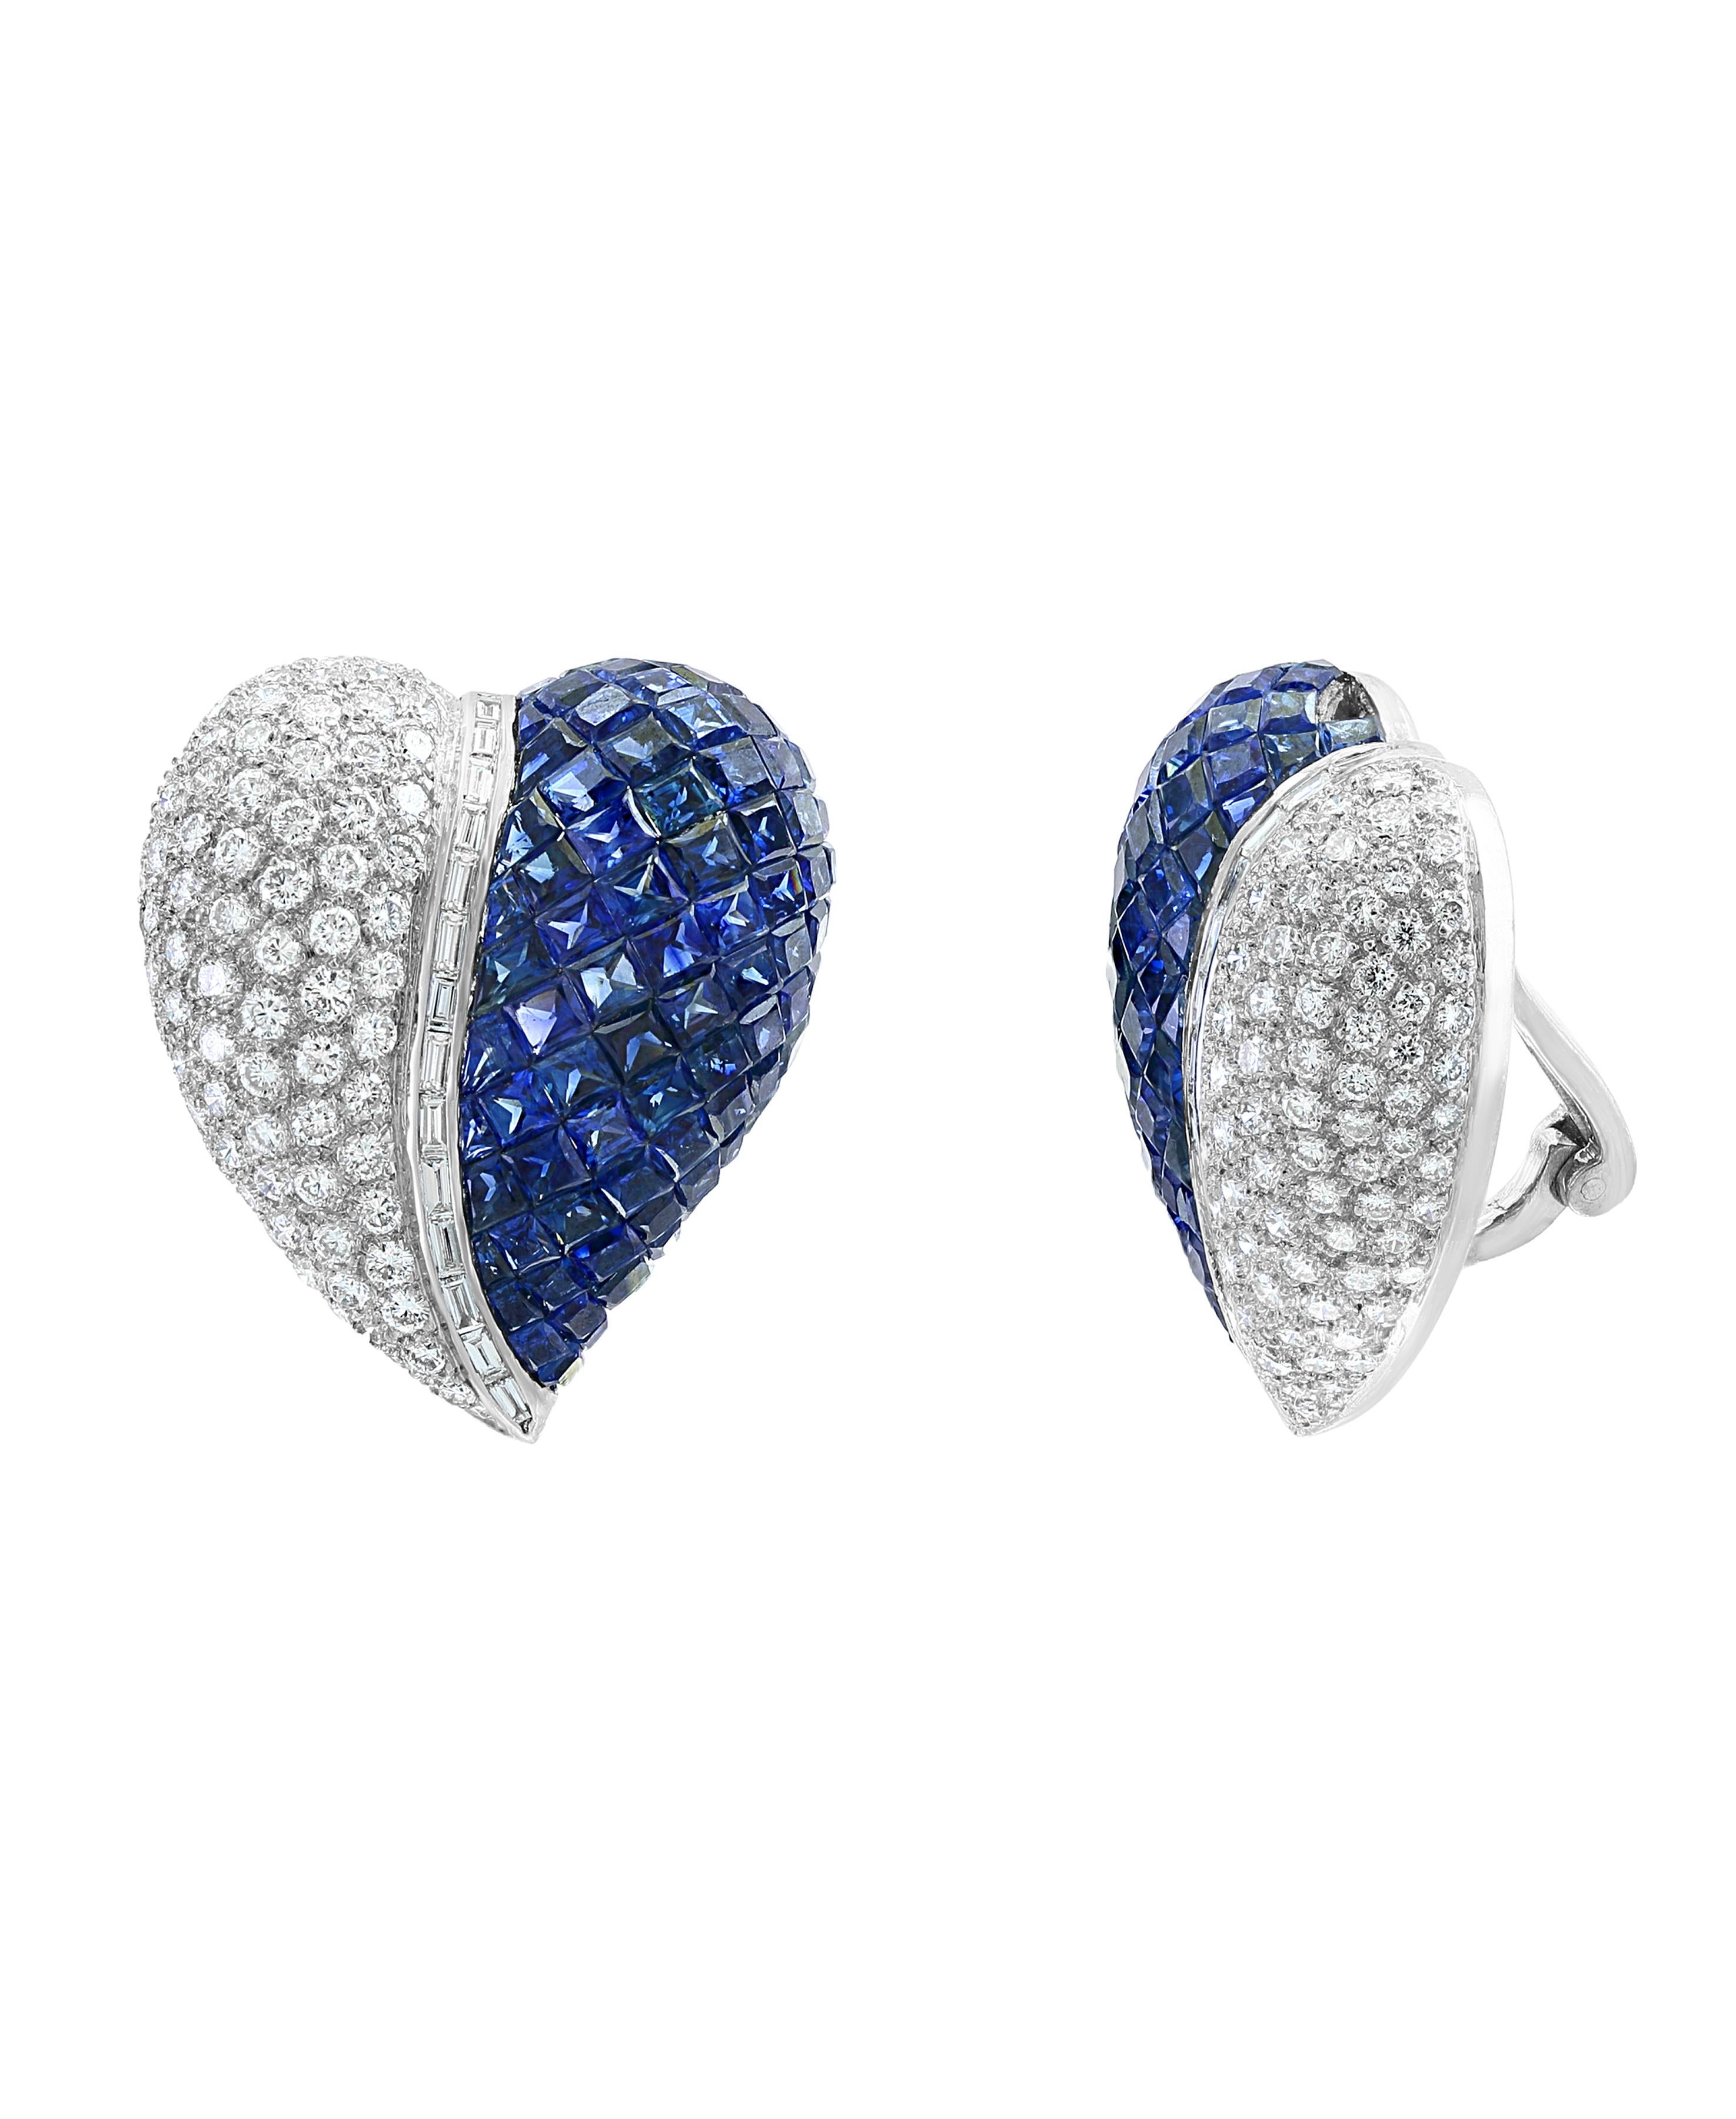 Ensemble invisible ou mystérieux  bleu  Coupe princesse  Saphir   Et  Diamant  Goujon cocktail  Boucle d'oreille en 18 K  Or blanc en forme de cœur .
paire parfaite fabriquée en  blanc 18 carats  d'or . 
or 18 K 30 grammes
 Diamants : environ 5,5